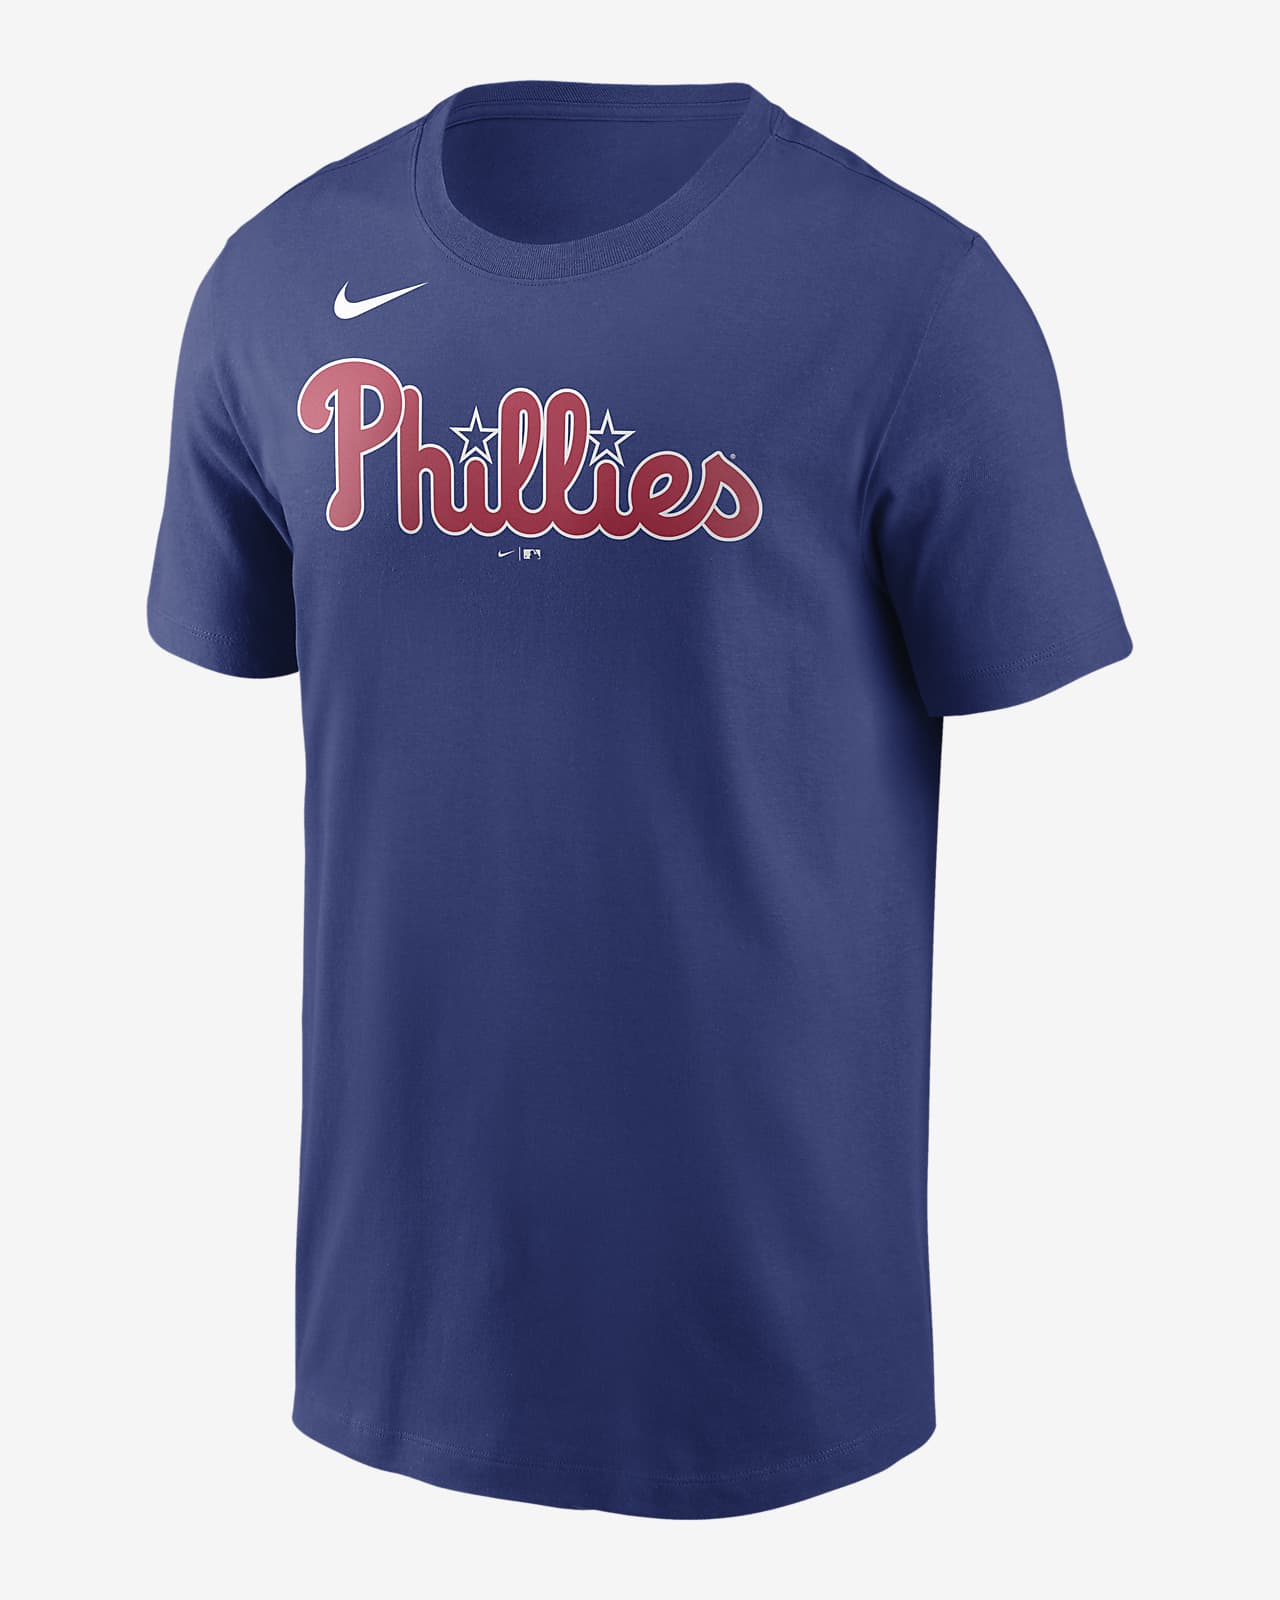 Nike Wordmark (MLB Philadelphia Phillies) Men's T-Shirt